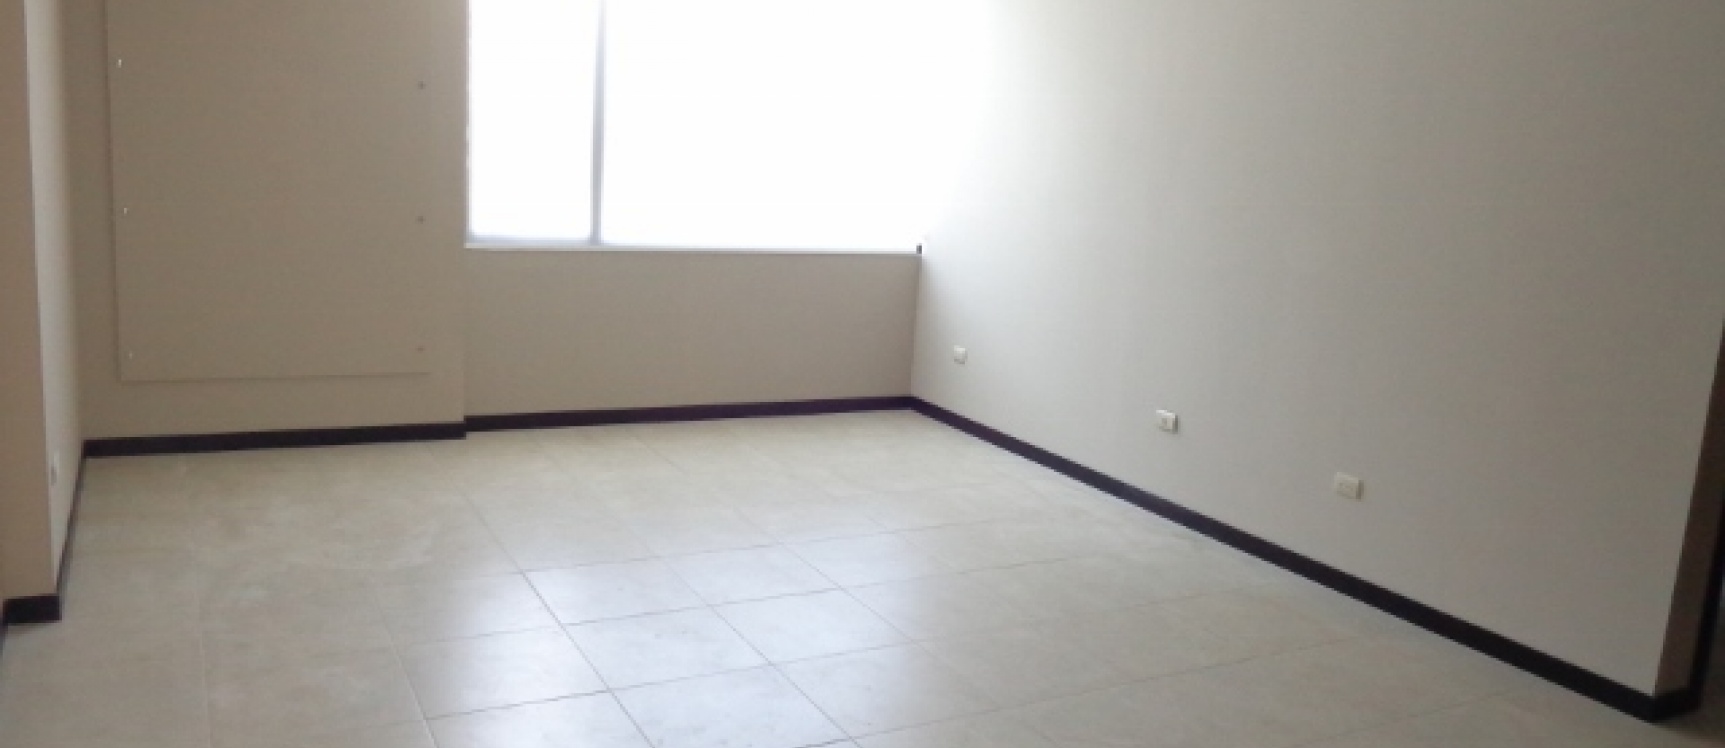 GeoBienes - Suite en Alquiler en Ciudad del Rio Bellini, Guayaquil. - Plusvalia Guayaquil Casas de venta y alquiler Inmobiliaria Ecuador